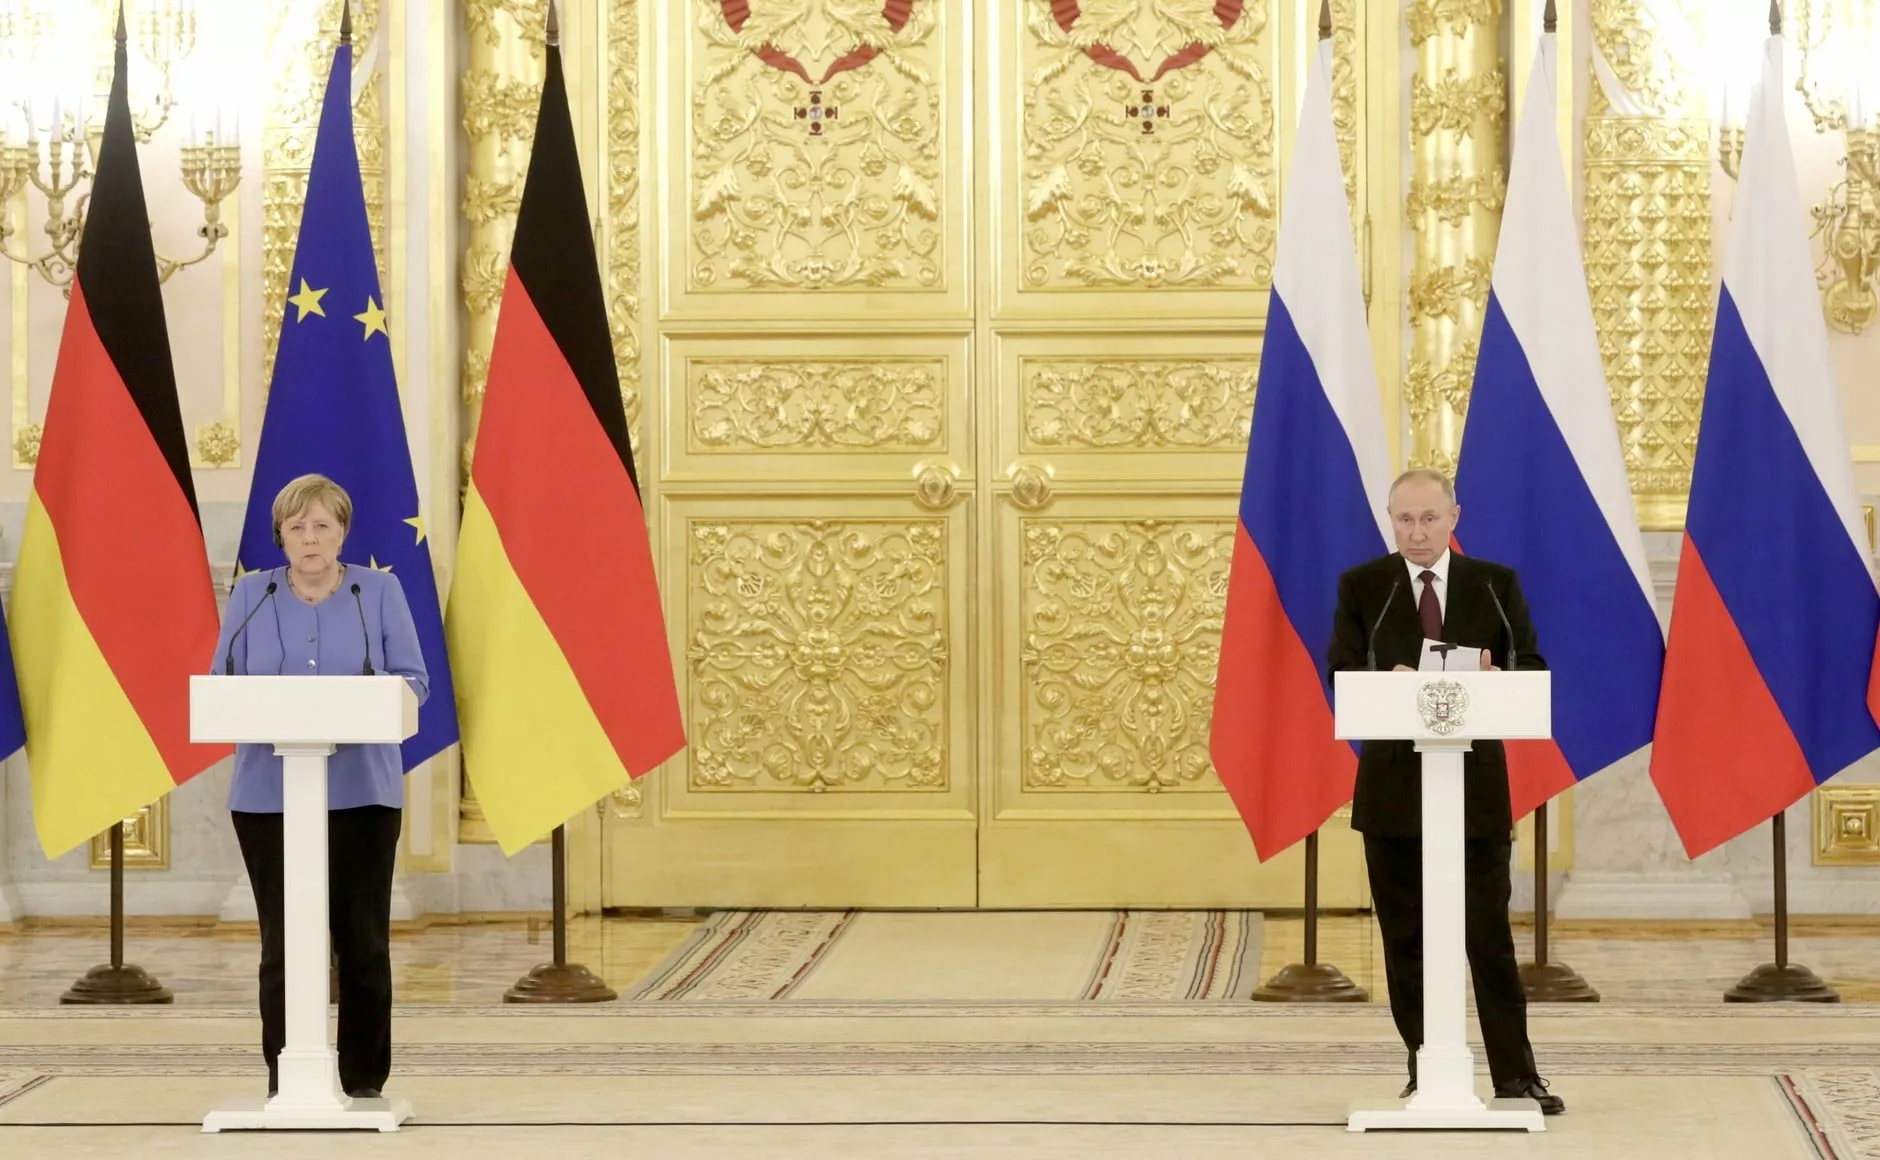 Меркель и Путин провели совместную пресс-конференцию